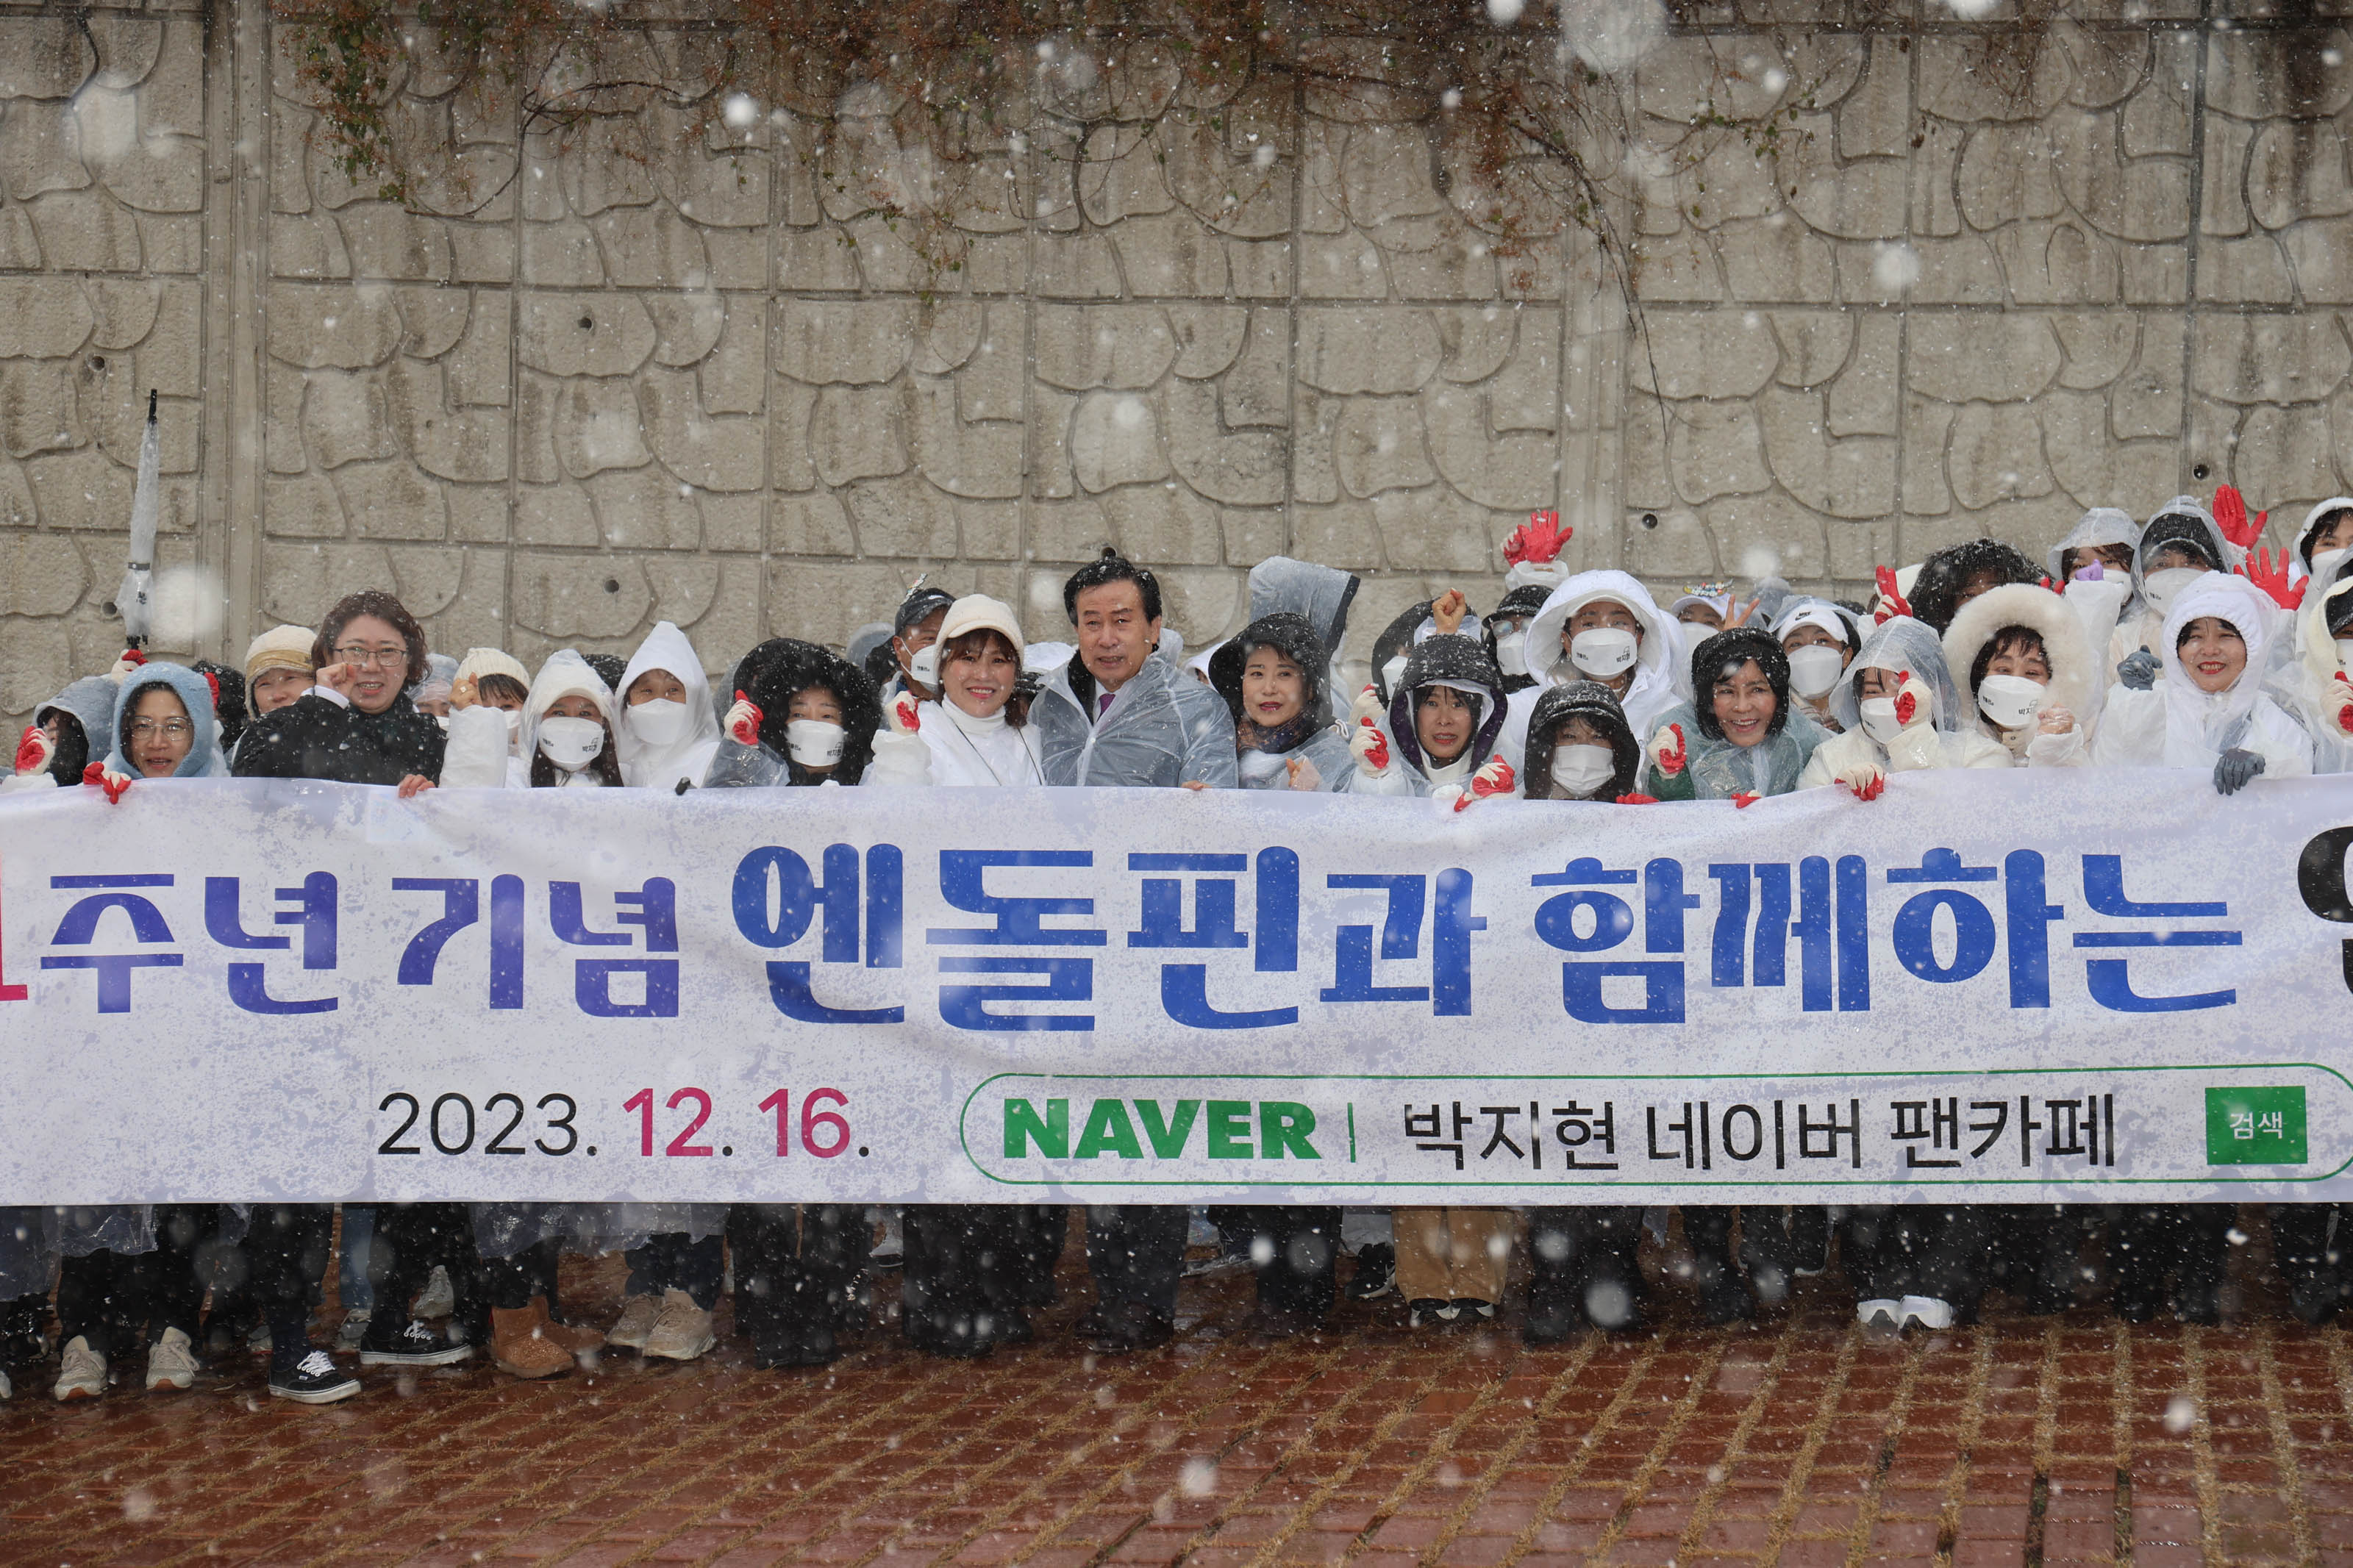 엔돌핀과 함께하는 2023.12.16 박지현 네이버 팬카페가 적힌 플랜카드를 들고 눈내리는 배경과함께 서있는 봉사단과 박홍률 목포시장